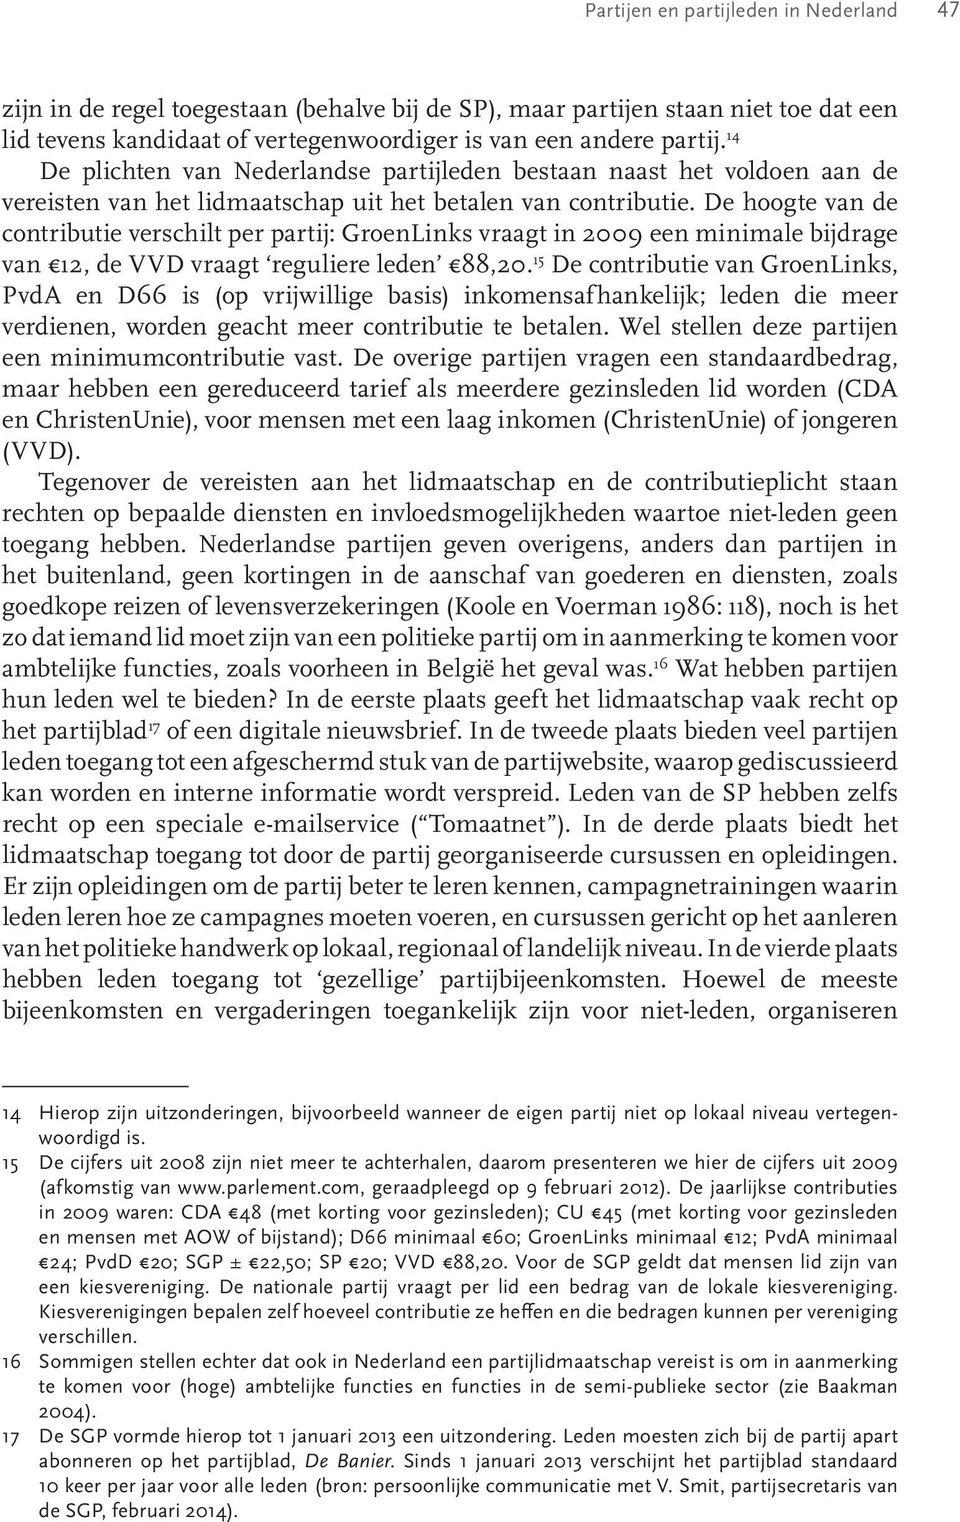 De hoogte van de contributie verschilt per partij: GroenLinks vraagt in 2009 een minimale bijdrage van 12, de VVD vraagt reguliere leden 88,20.